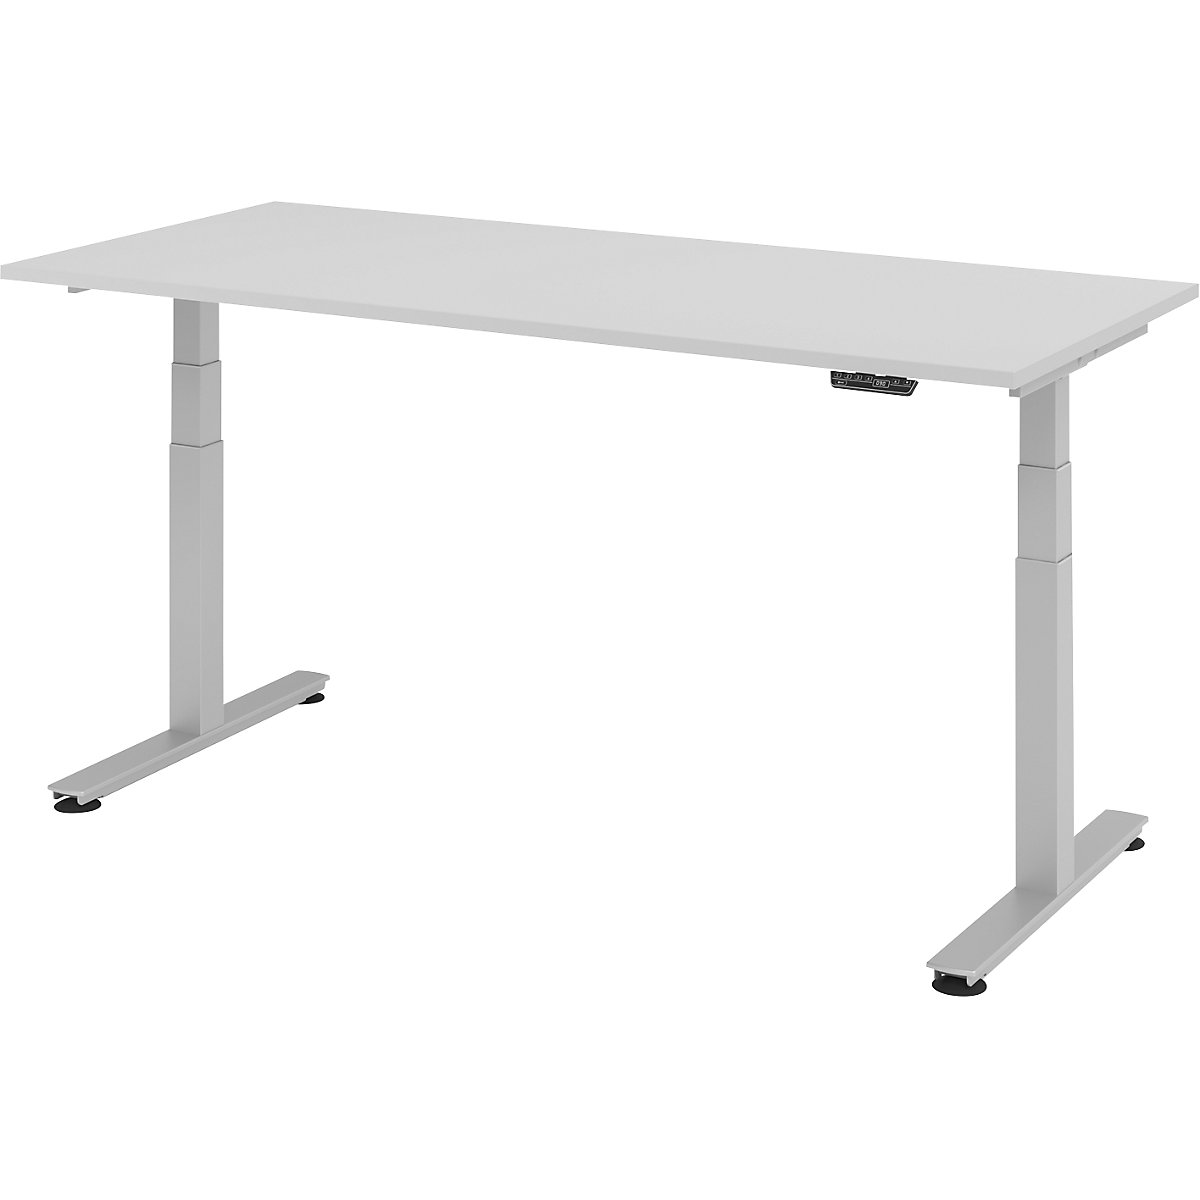 Sta-bureautafel, elektrisch in hoogte verstelbaar UPLINER-2.0, recht, b x d = 1800 x 800 mm, lichtgrijs-19